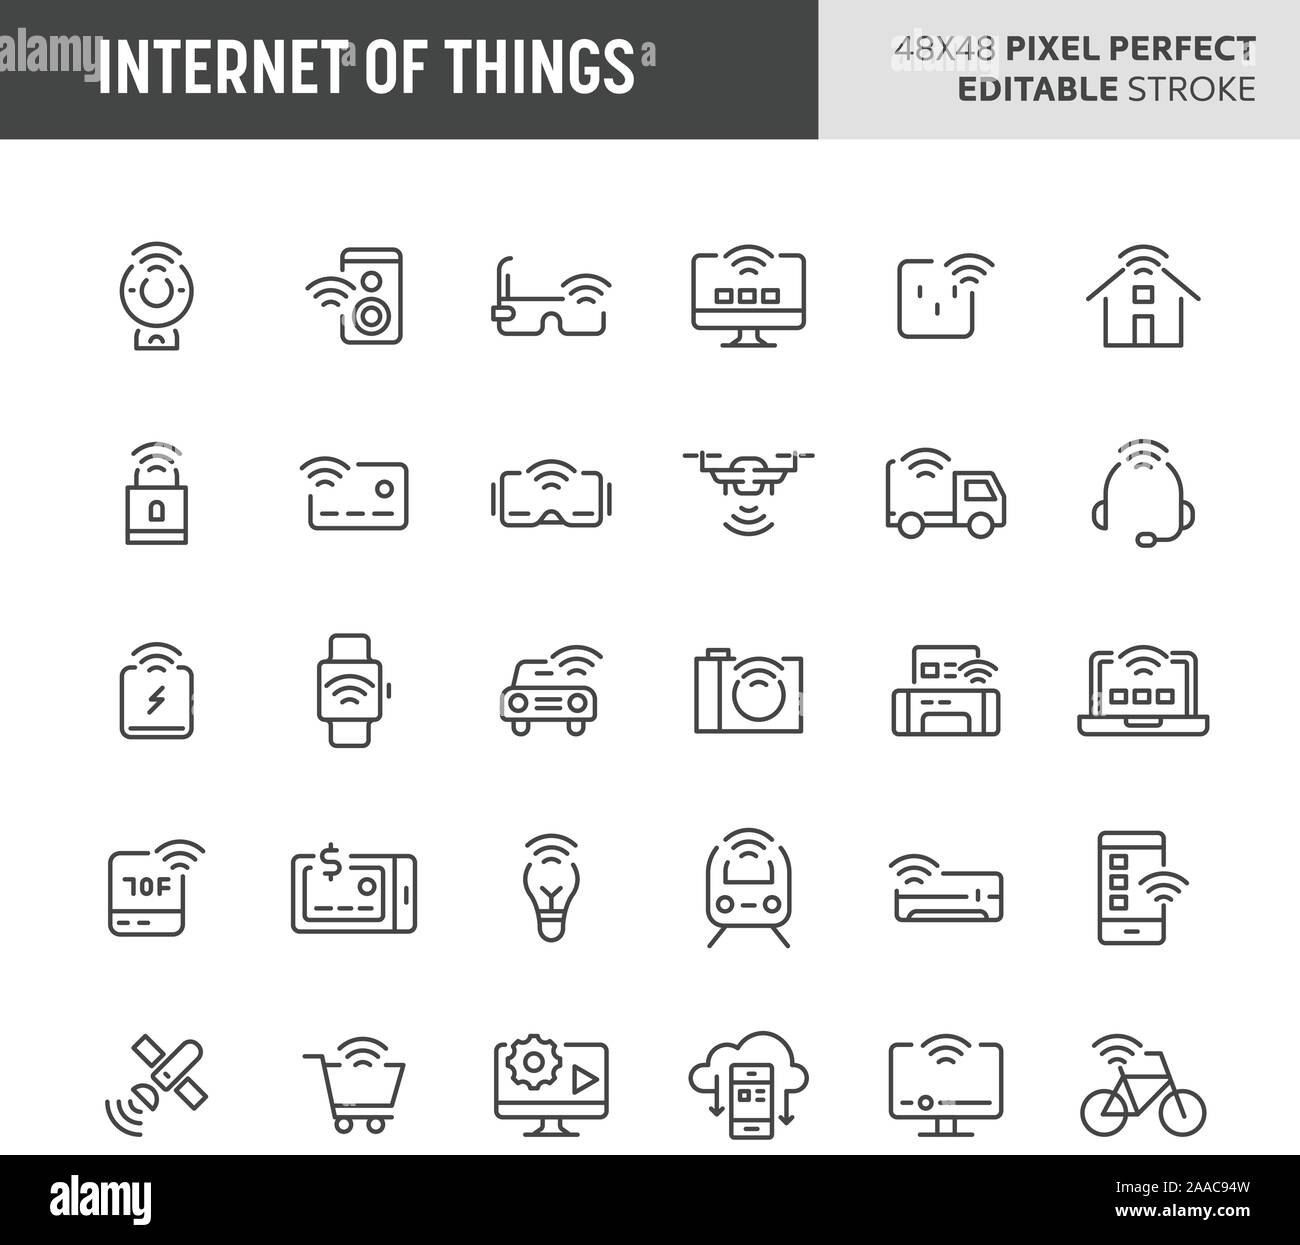 30 dünne Linie symbole im Zusammenhang mit dem Internet der Dinge (IoT). Symbole wie Netzwerk, Geräte, Haushaltsgeräte und Fahrzeuge sind in diesem Set enthalten. Stock Vektor